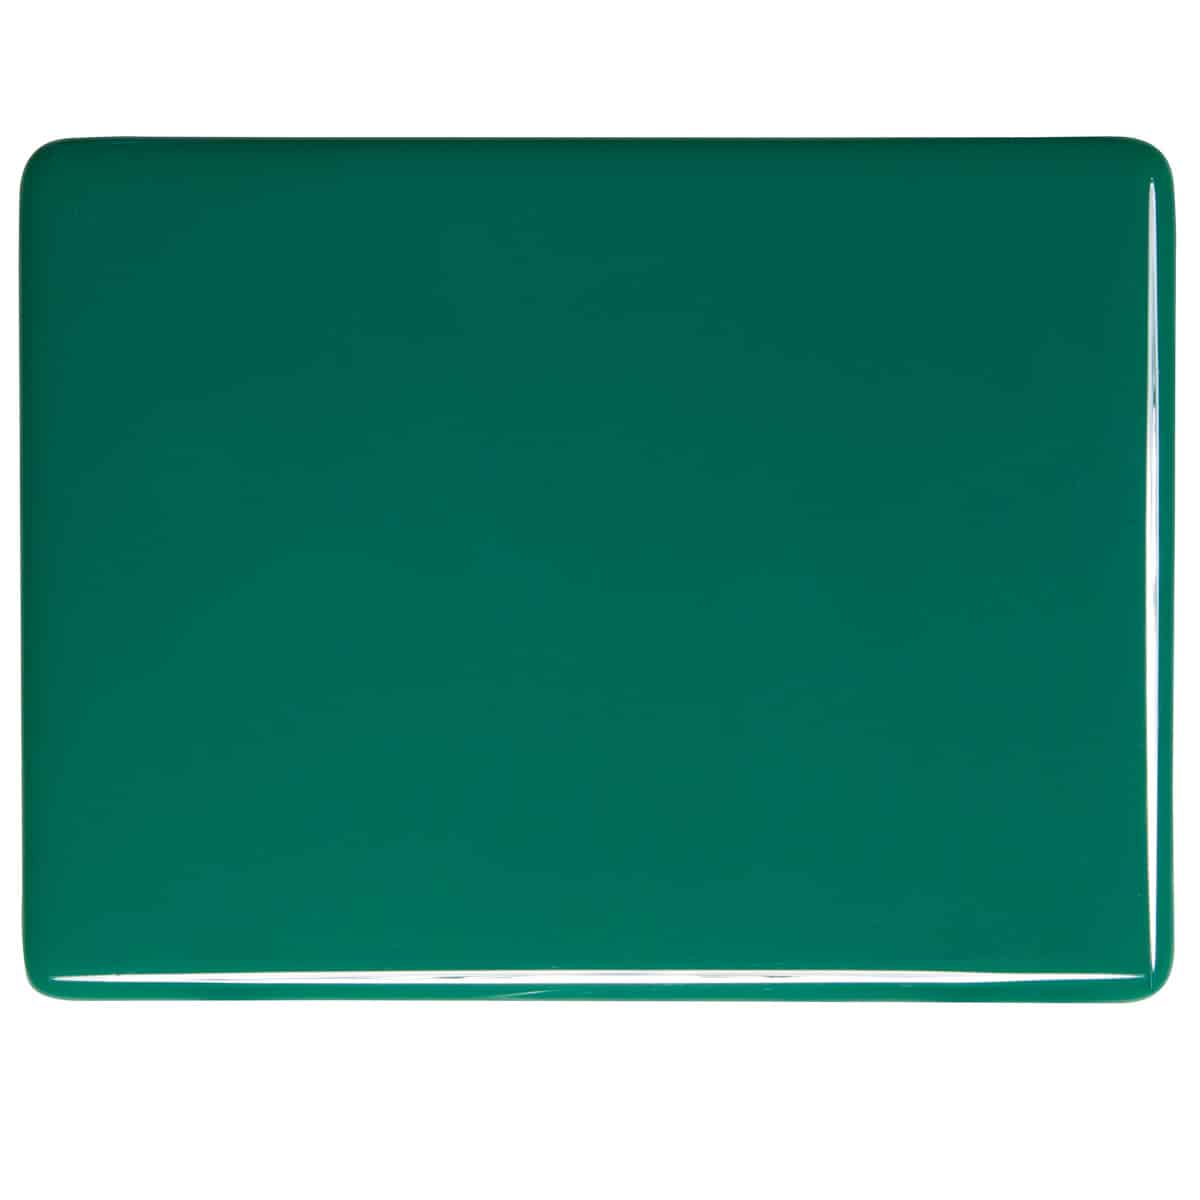 Jade Green Opal sheet glass swatch